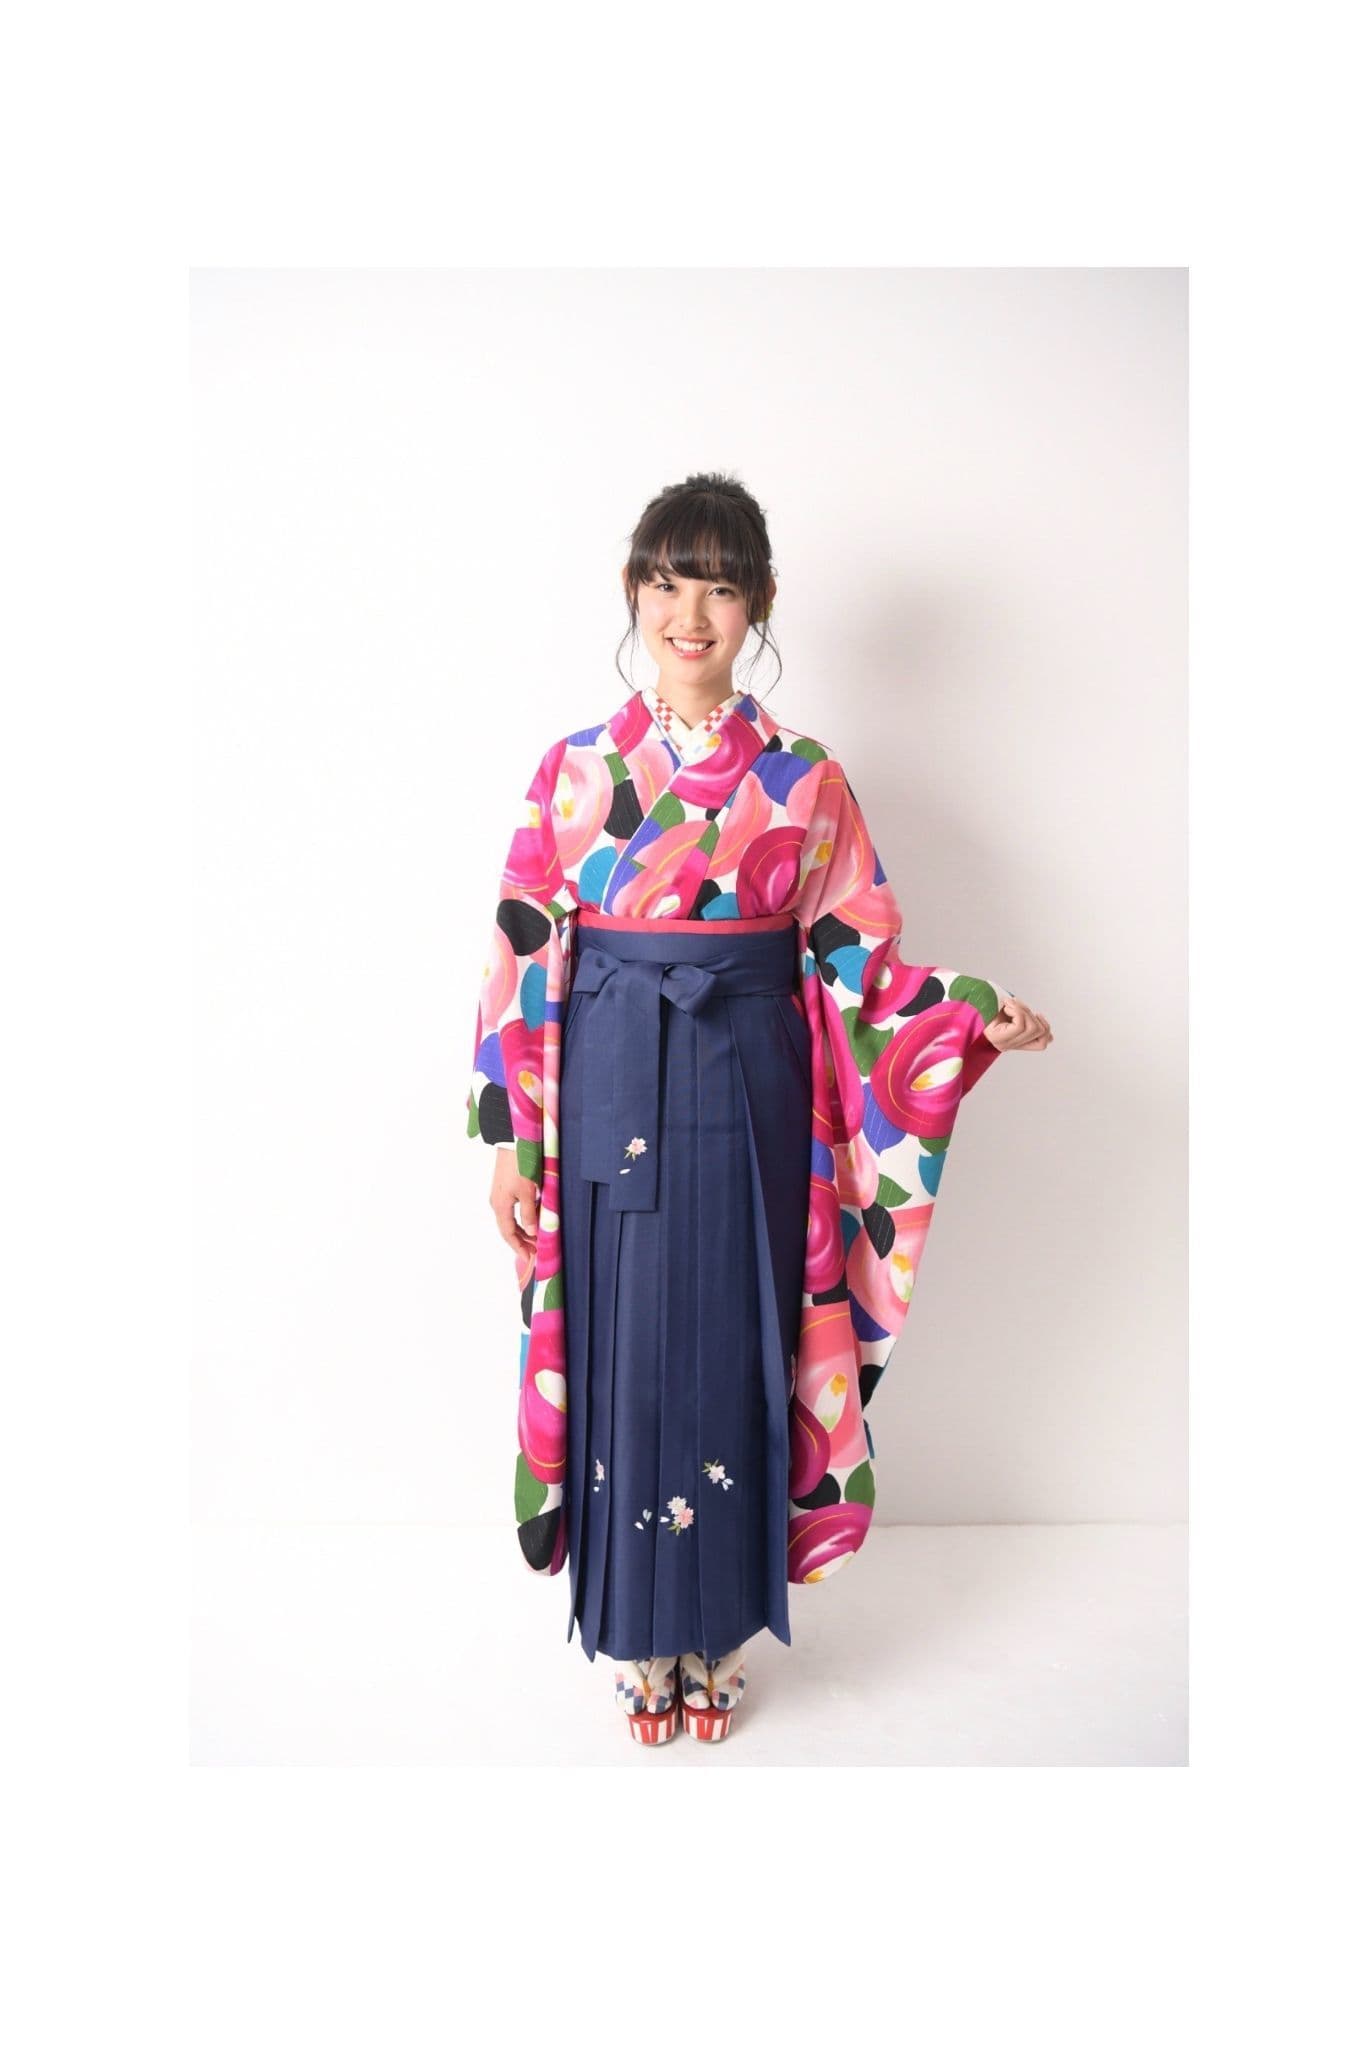 ピンクの着物と紺の袴を着た女性